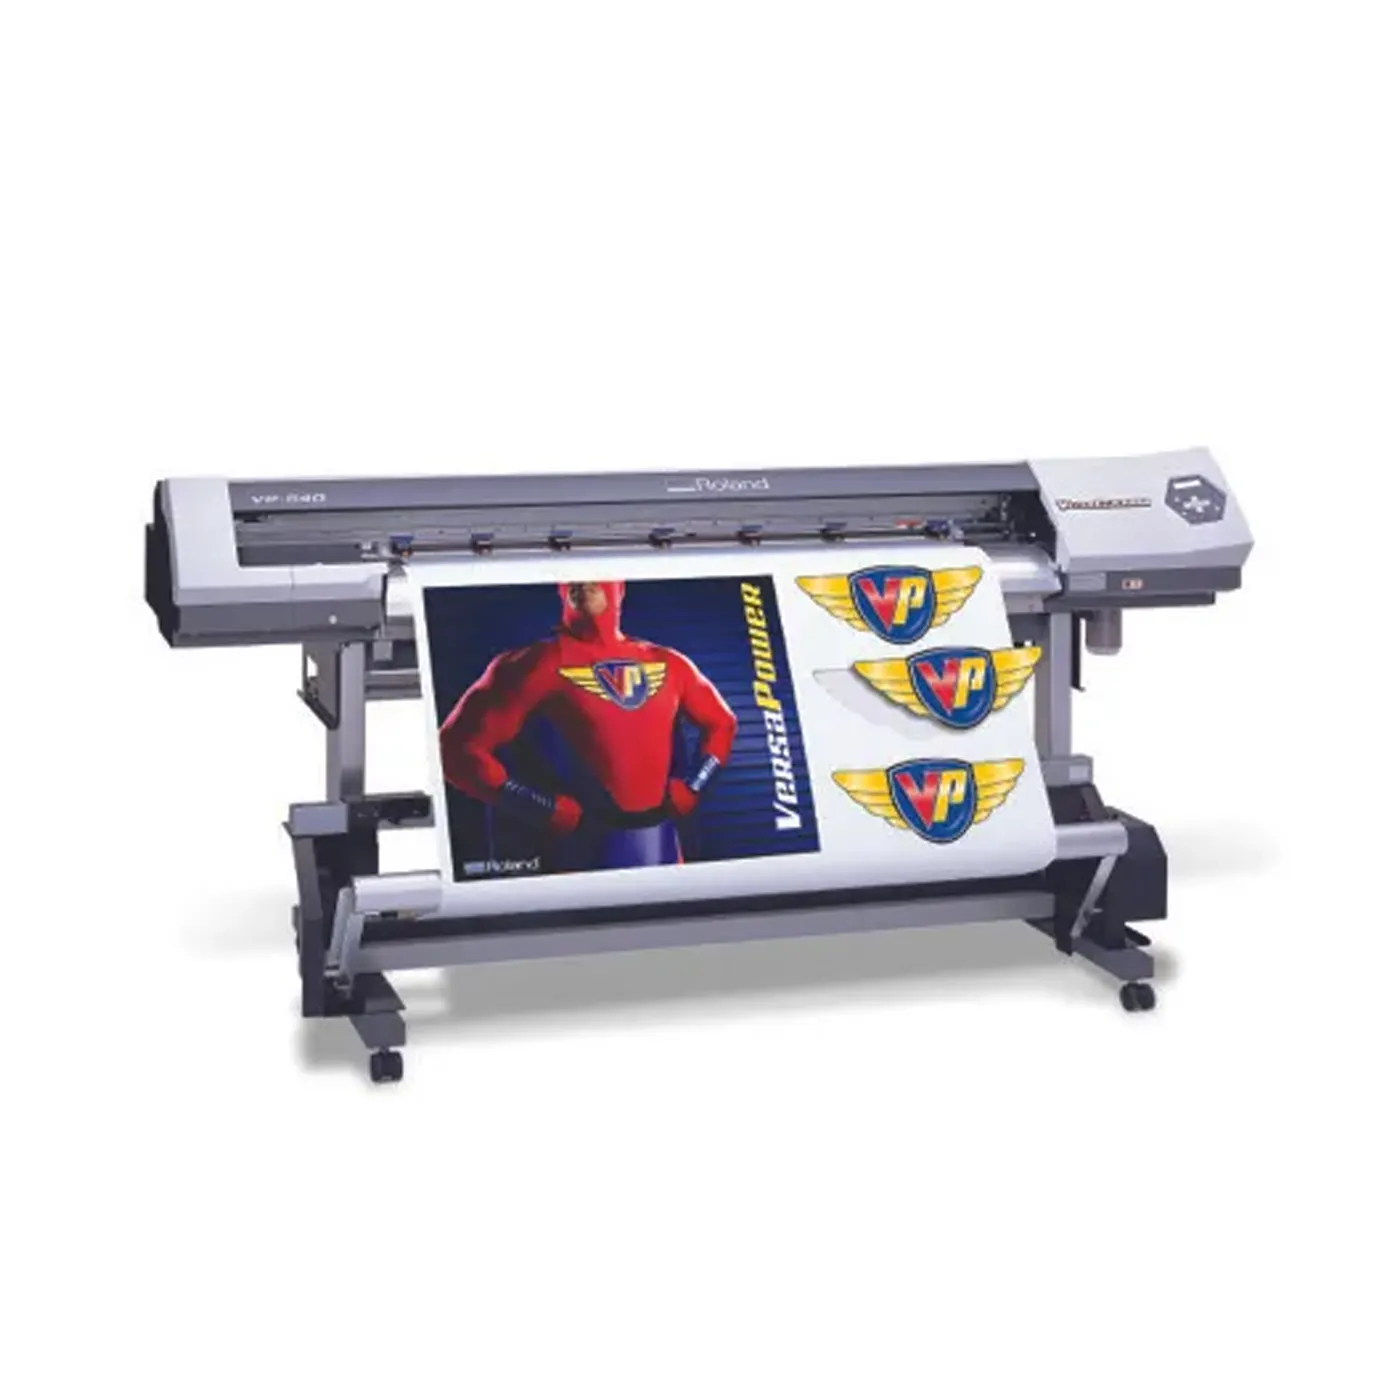 प्रयुक्त रोलैंड प्रिंट और कट मशीन vp540 इको सॉल्वेंट प्रिंटर बैनर स्टिकर पोस्टर विनाइल वाणिज्यिक प्रिंटर प्रिंट कर सकता है